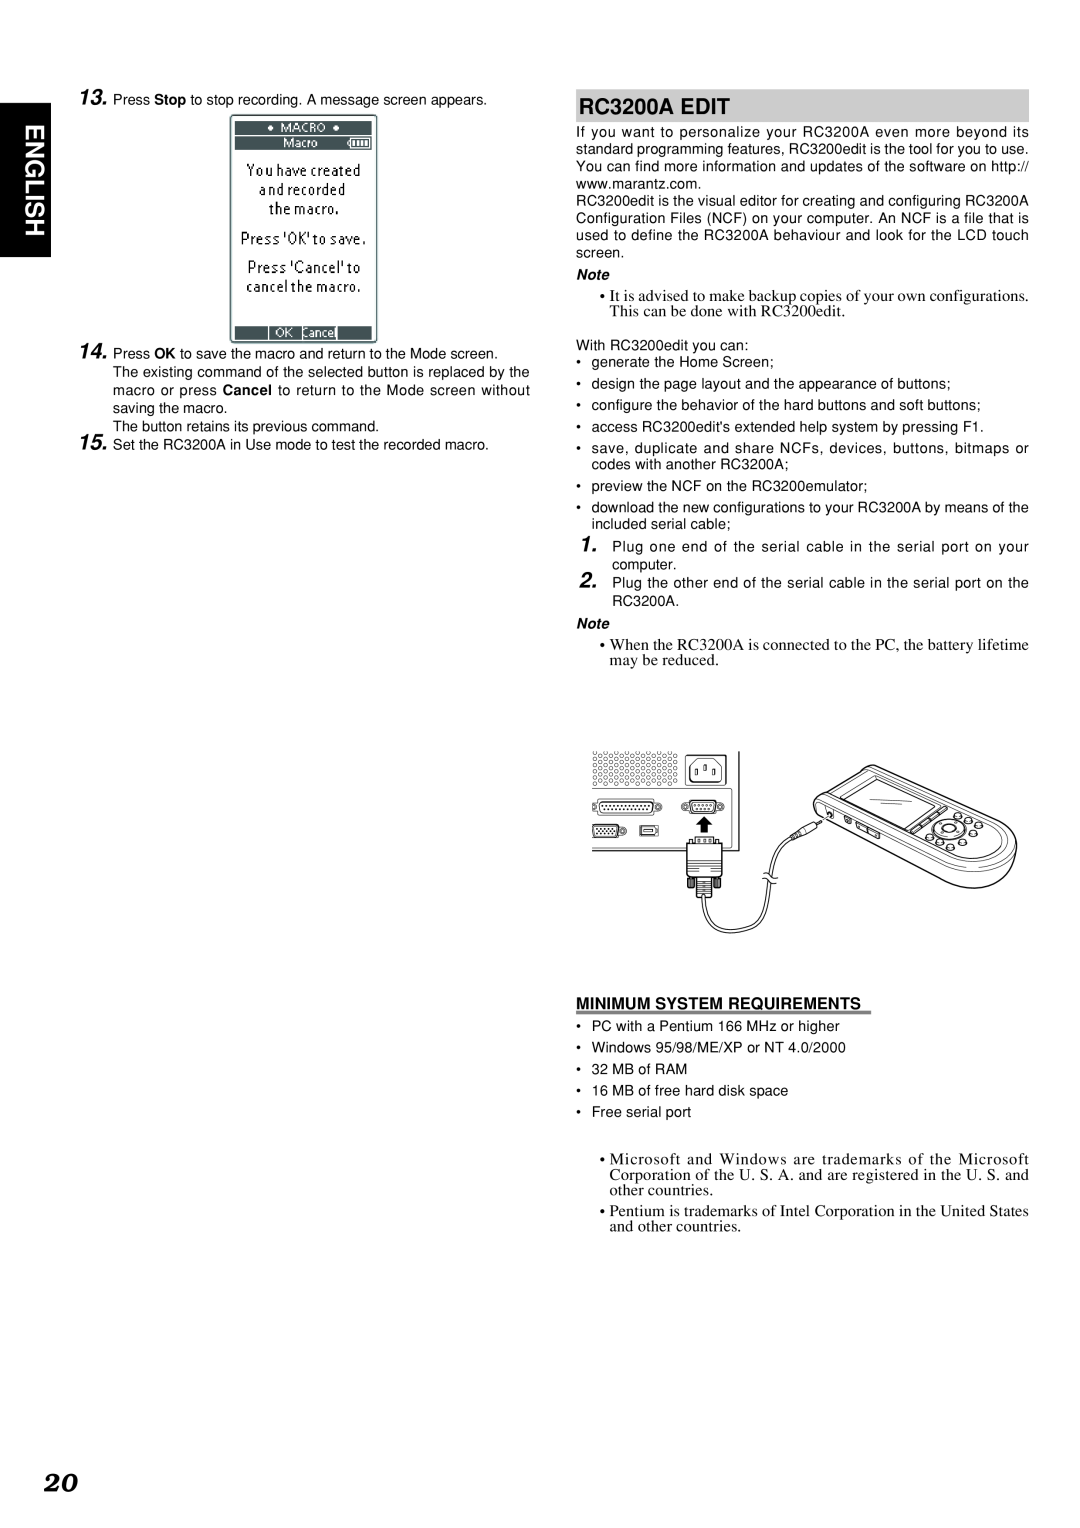 Marantz SR9300 manual English, RC3200A EDIT, Minimum System Requirements 